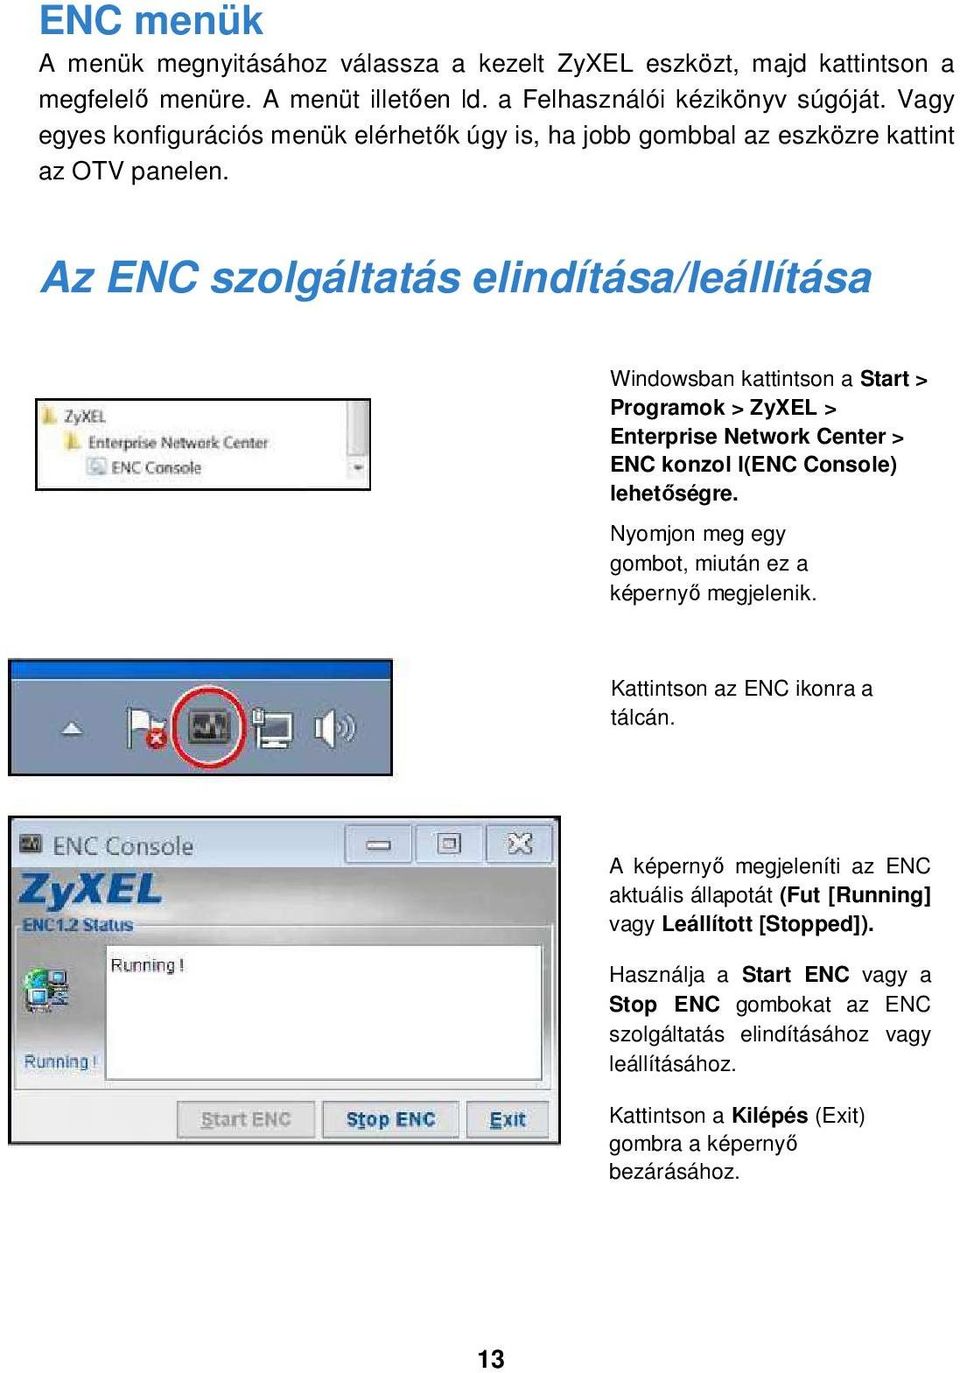 Az ENC szolgáltatás elindítása/leállítása Windowsban kattintson a Start > Programok > ZyXEL > Enterprise Network Center > ENC konzol l(enc Console) lehetőségre.